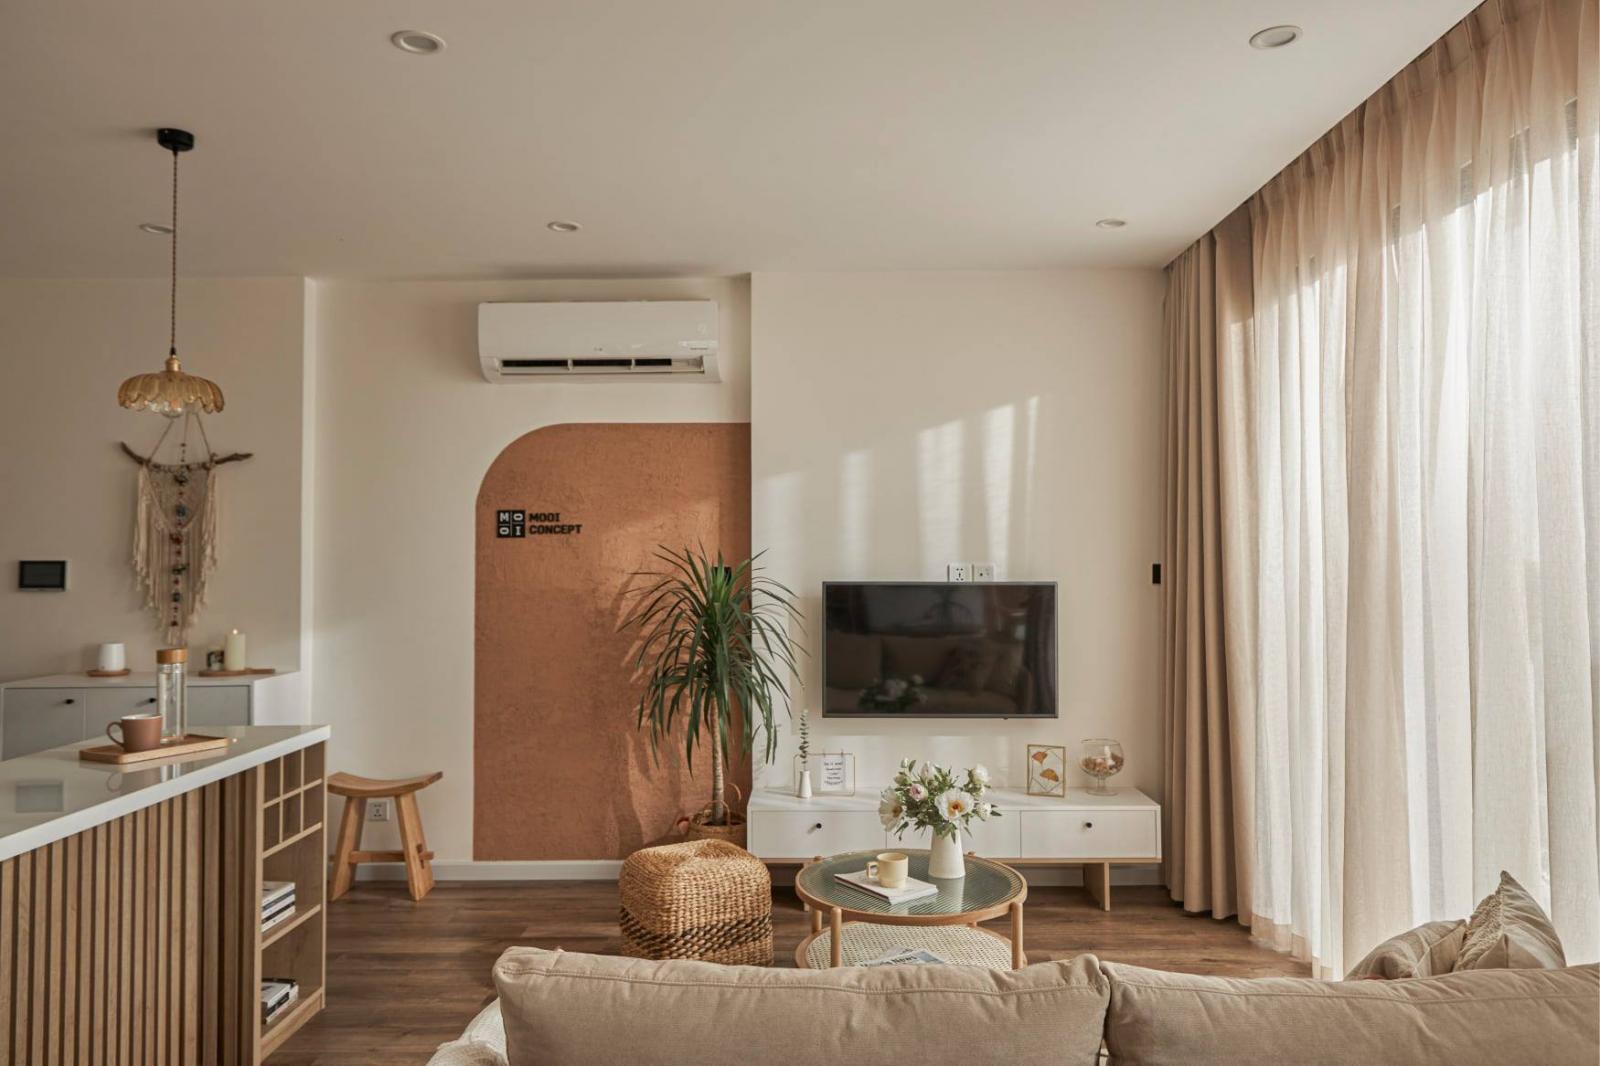 Thiết kế nội thất căn hộ phong cách Japandi đầy độc đáo với các mẹo bạn chưa từng biết (ảnh: Internet)